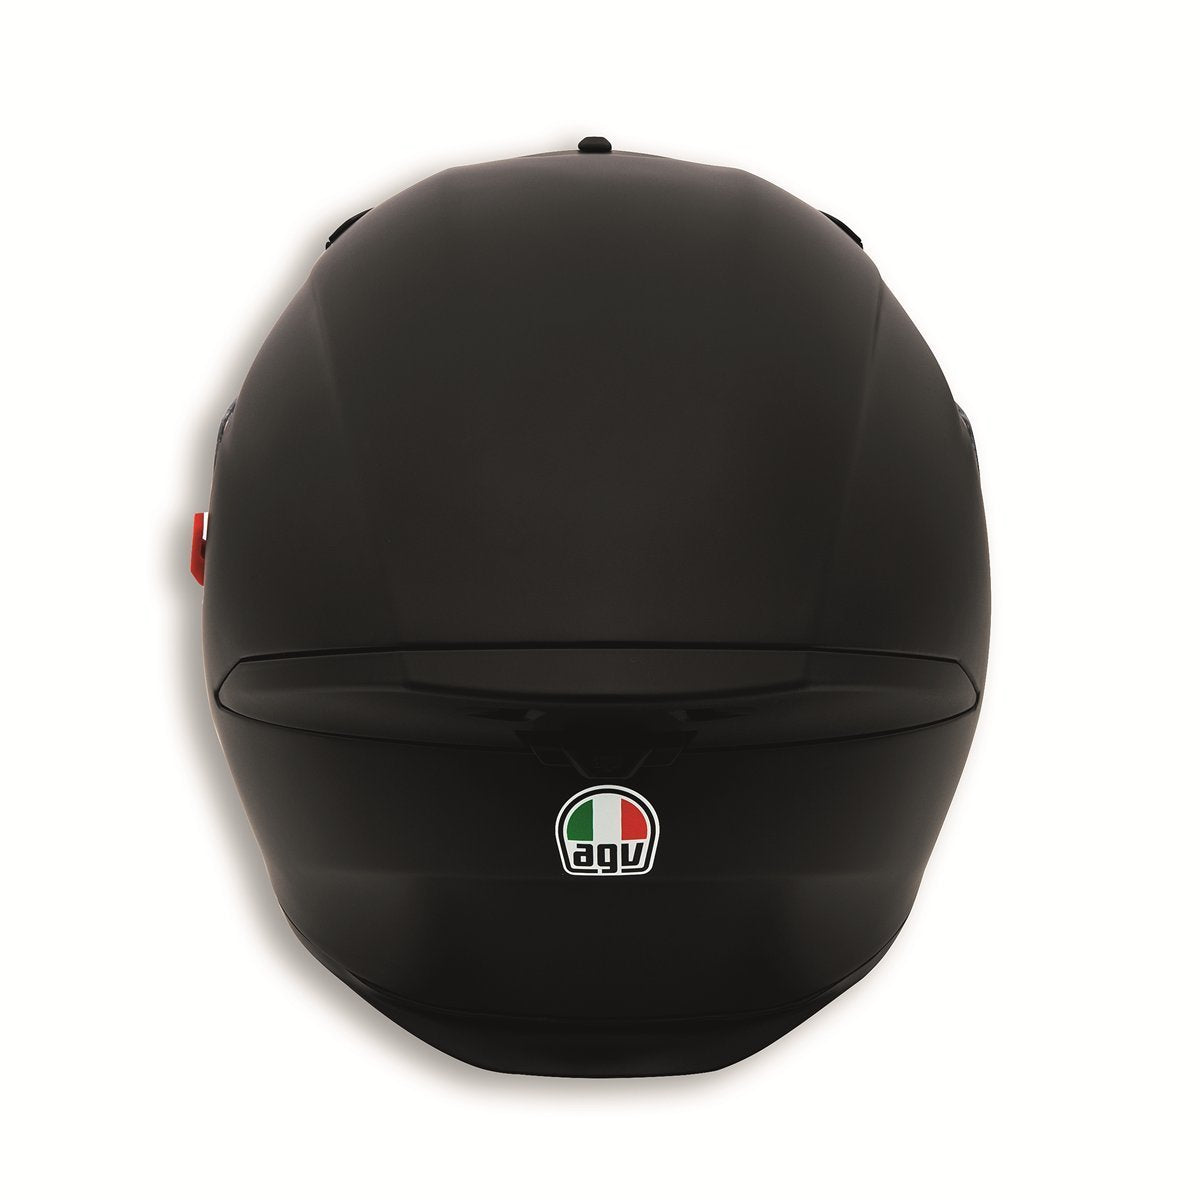 Ducati Dark Rider V2 Helmet